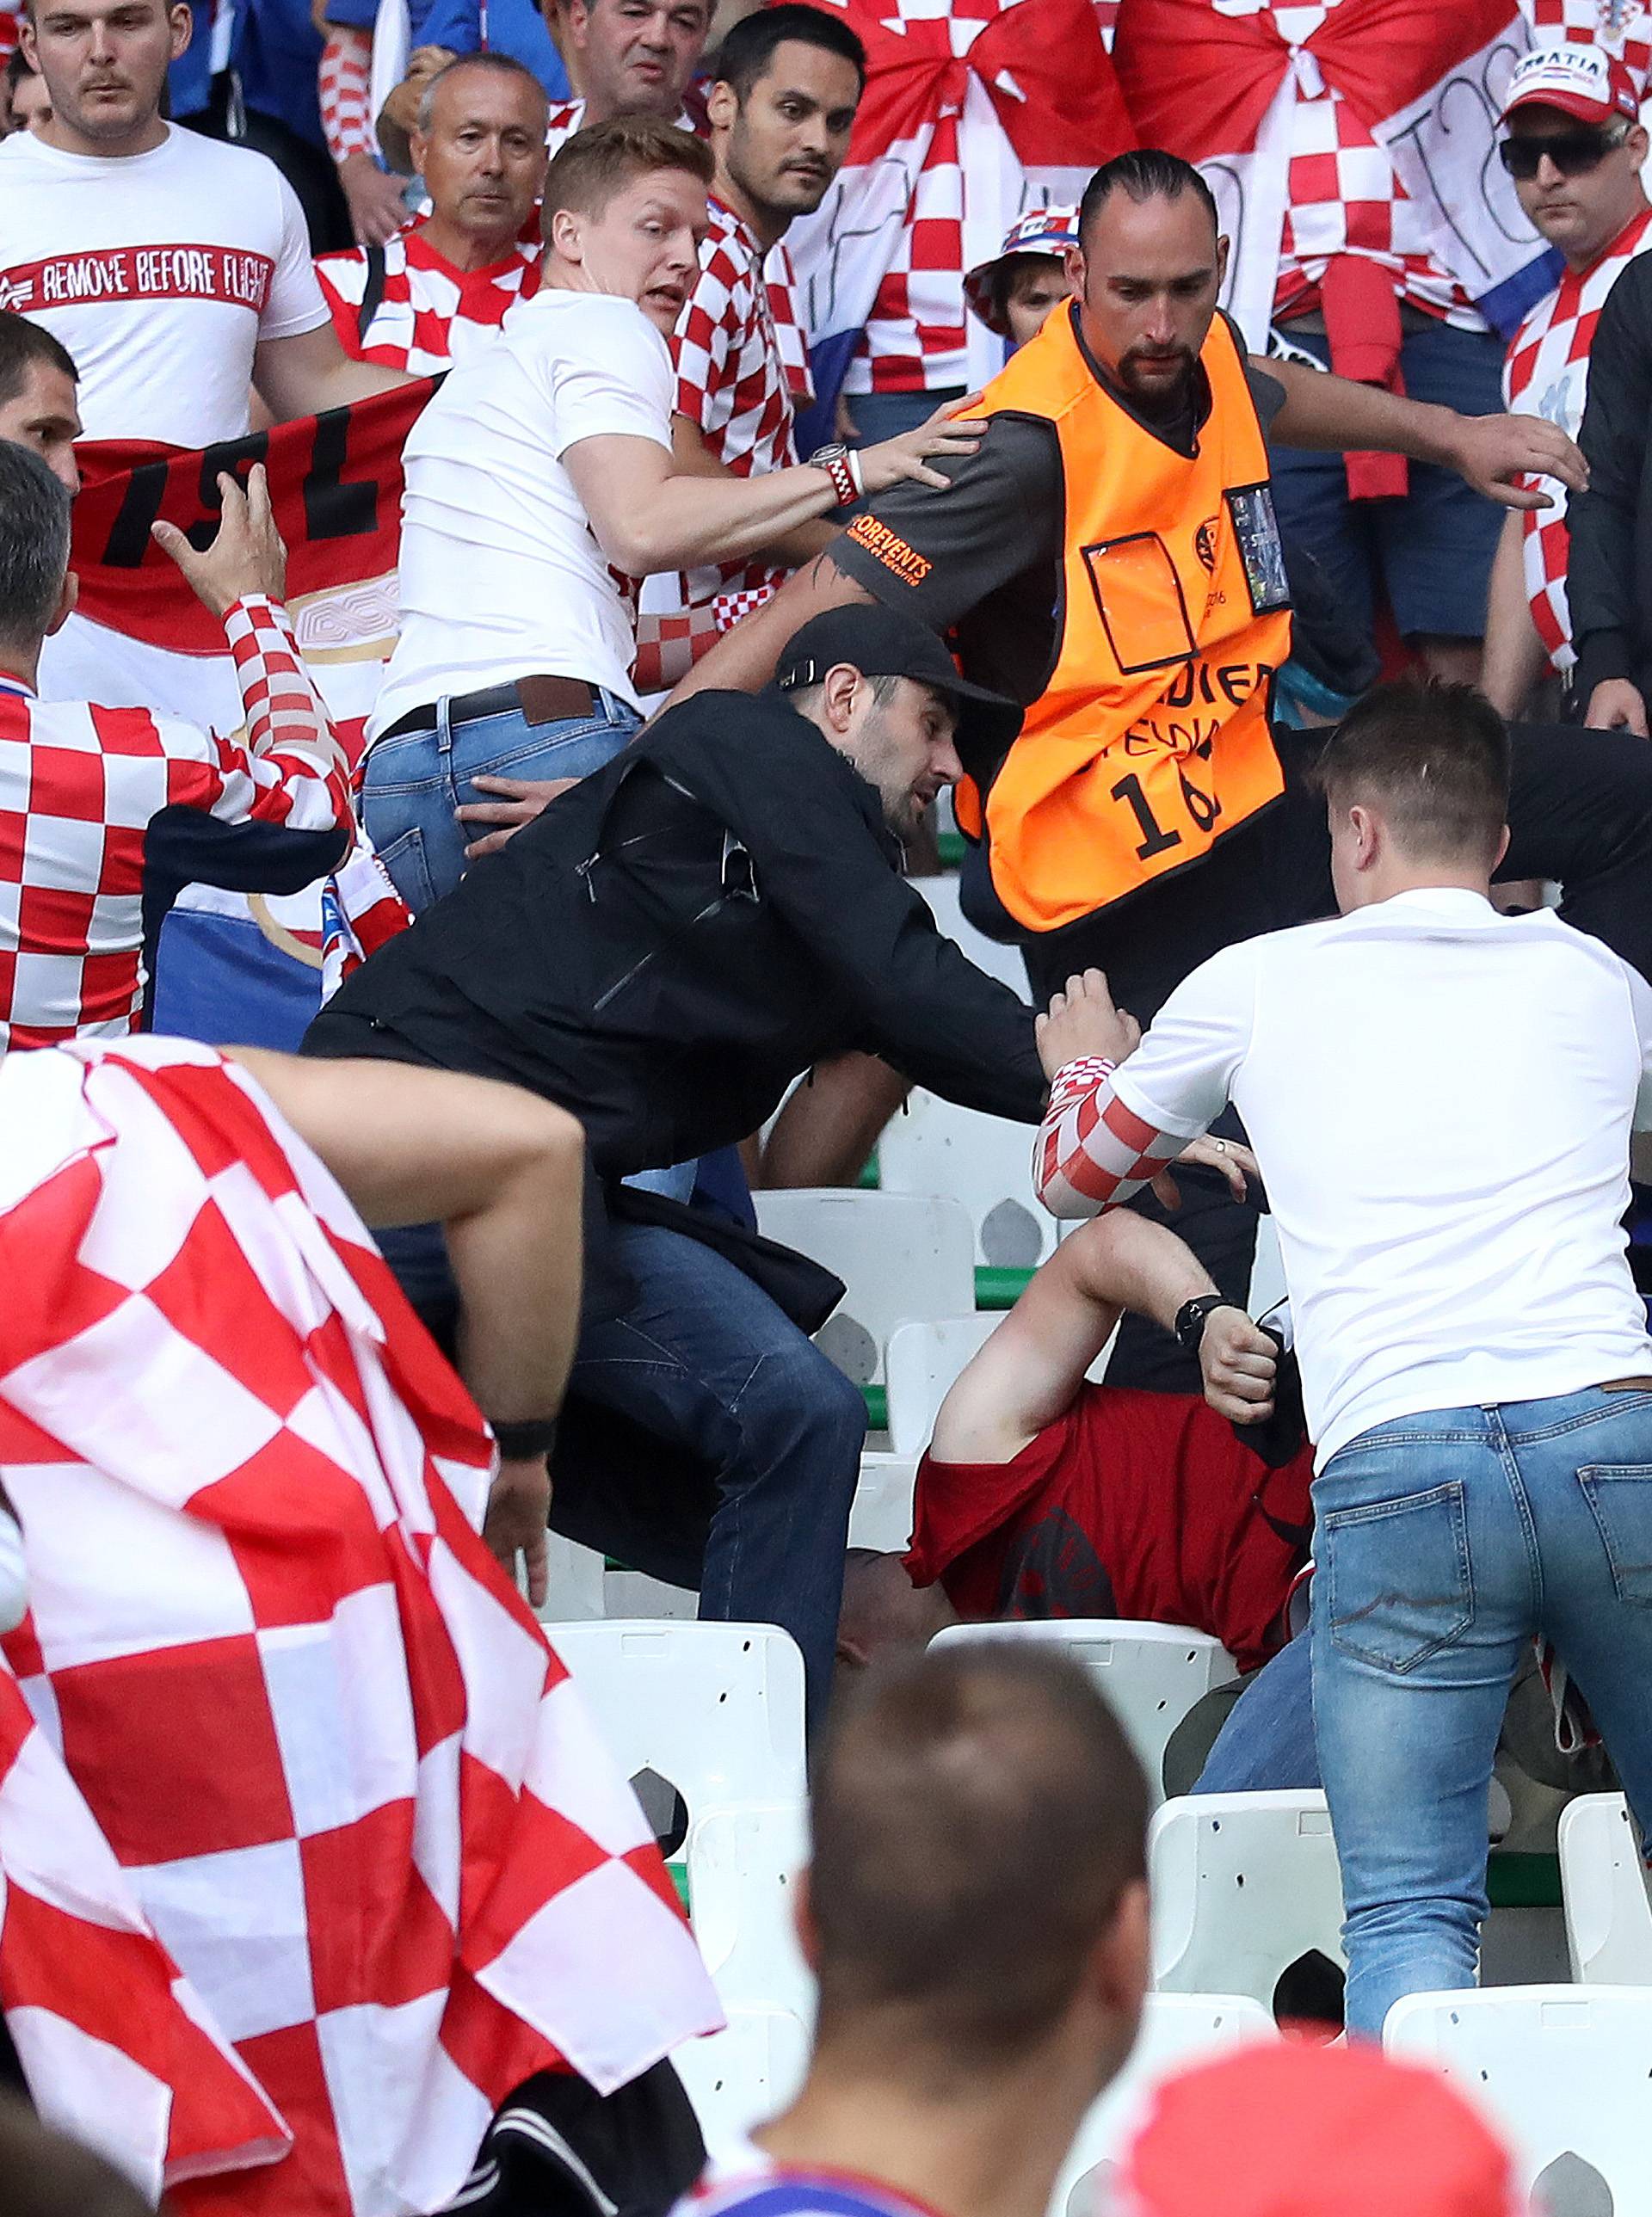 Novinar Amerikancima otkrio zašto hrvatski huligani divljaju